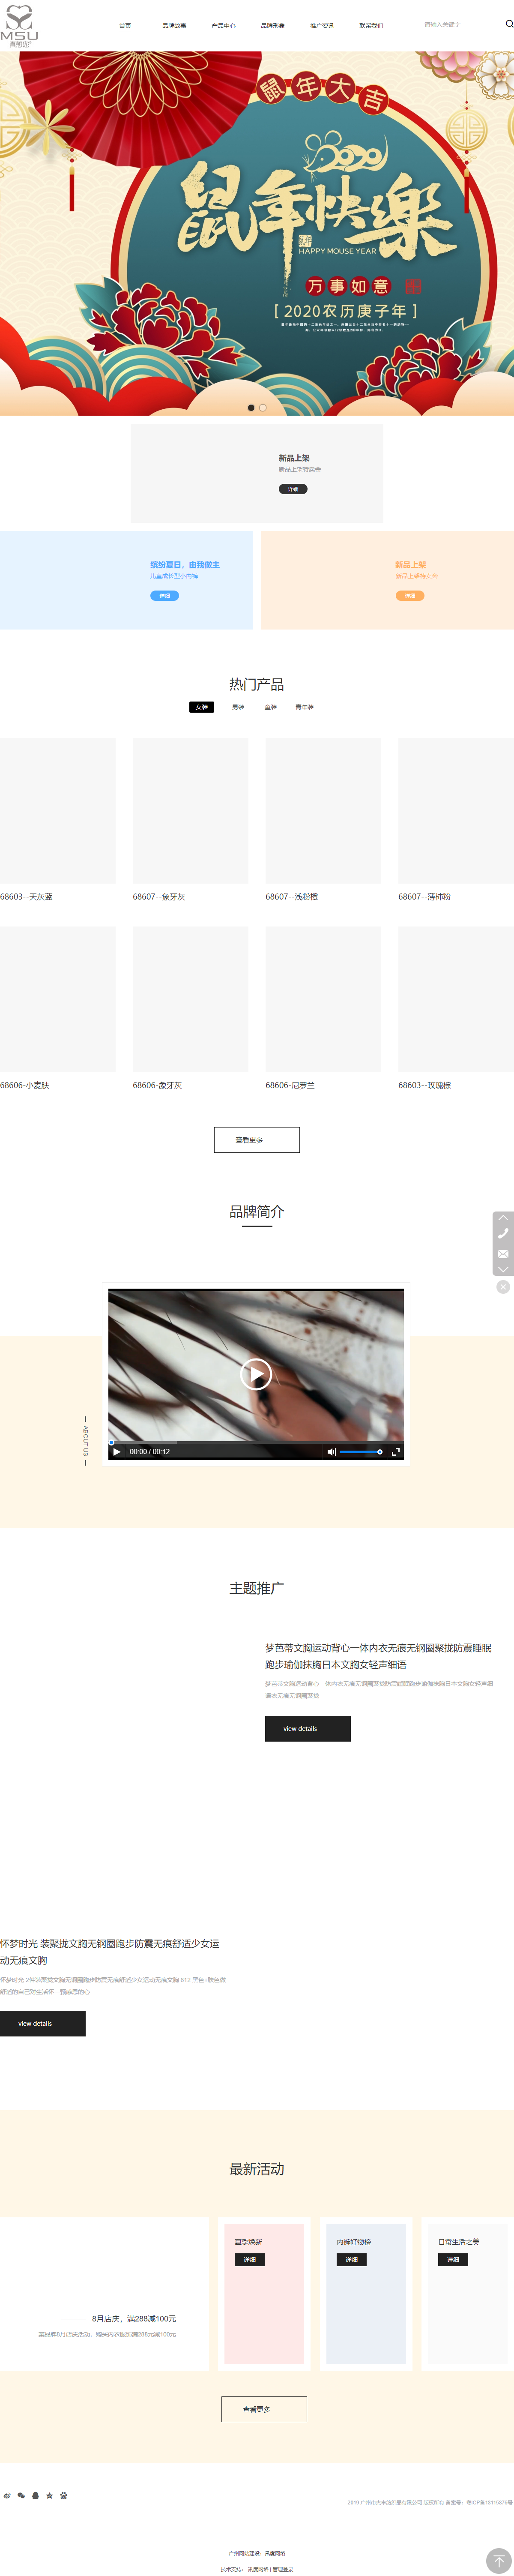 广州市杰丰纺织品有限公司网站案例